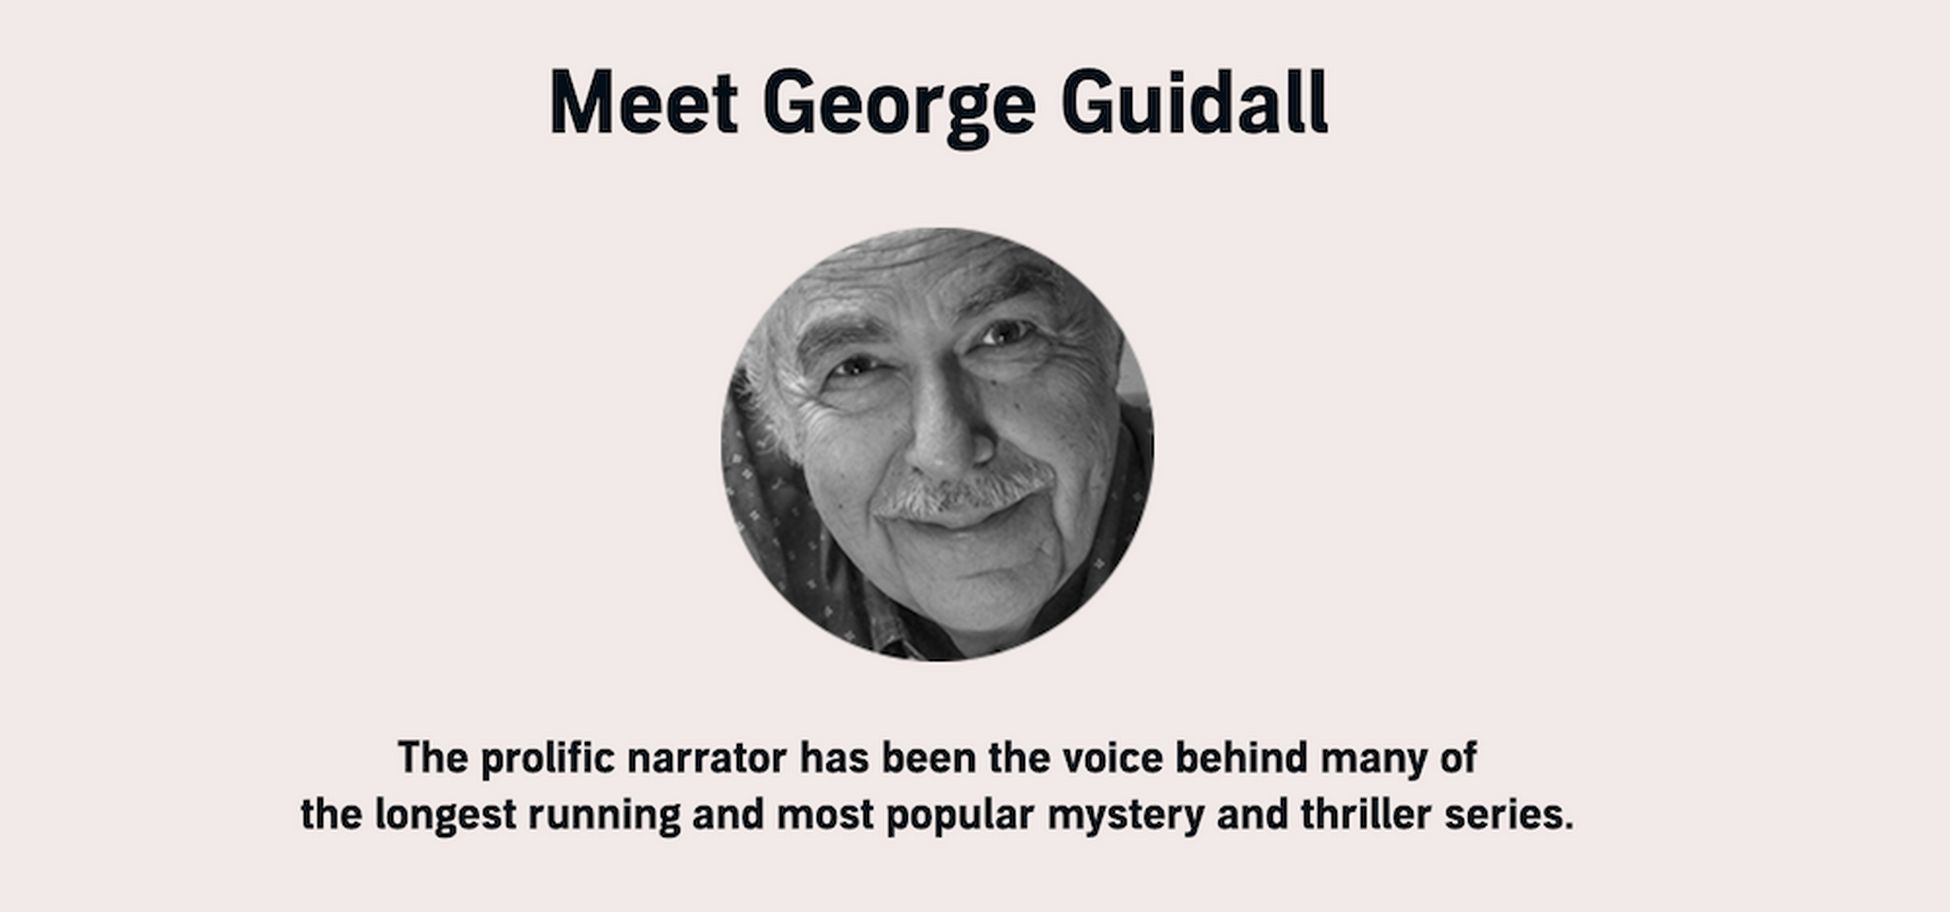 George Guidall